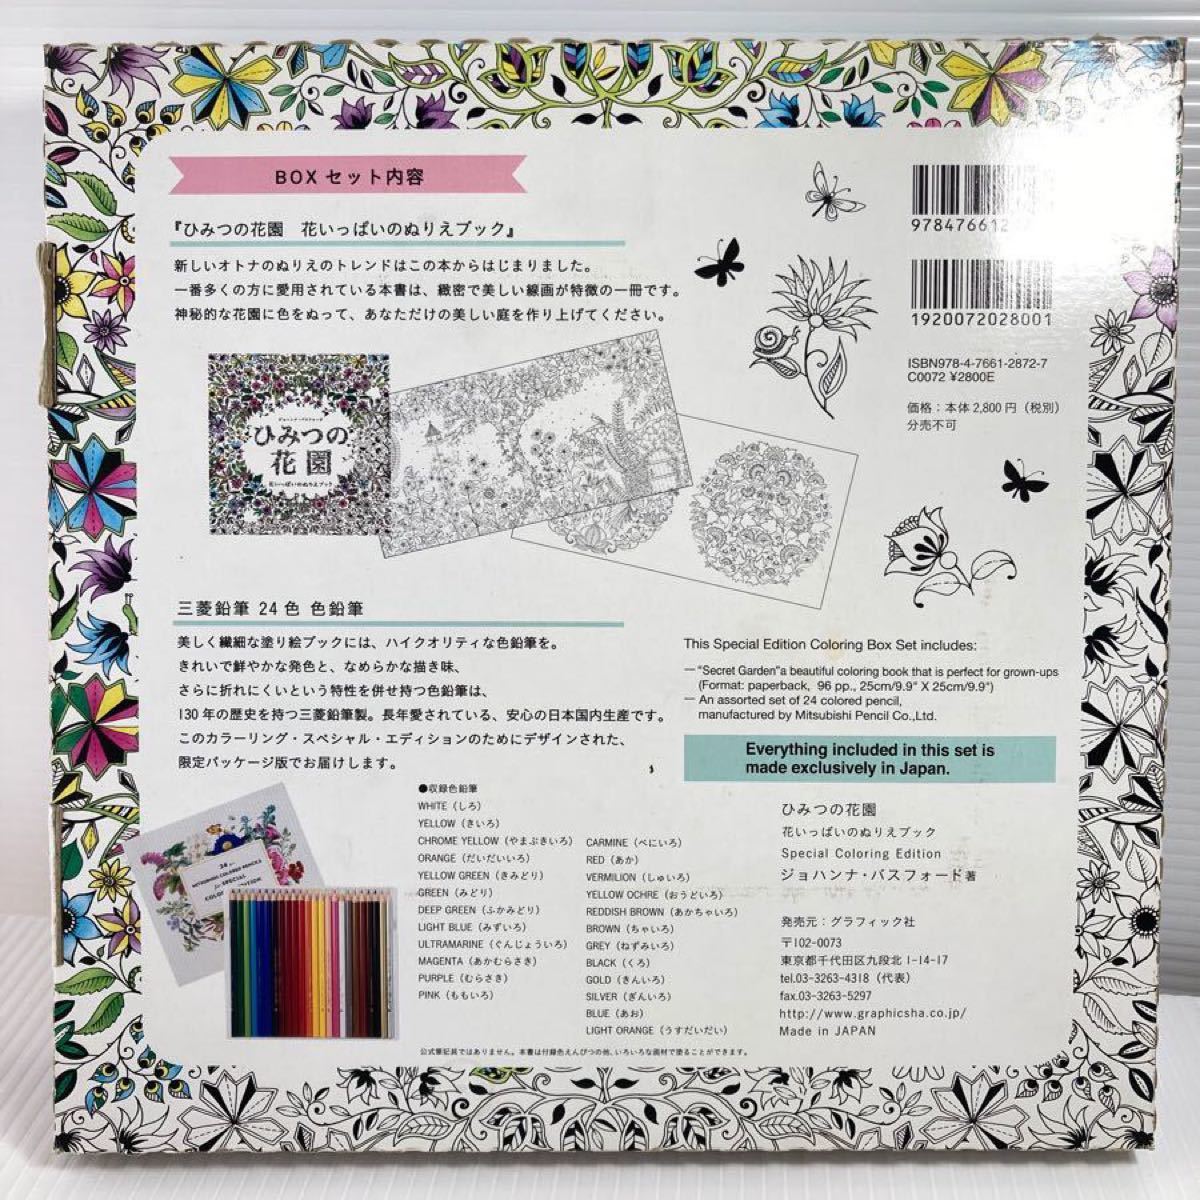 【新品・未使用】ひみつの花園 スペシャル・カラーリング・エディション オトナの塗り絵 色鉛筆セット